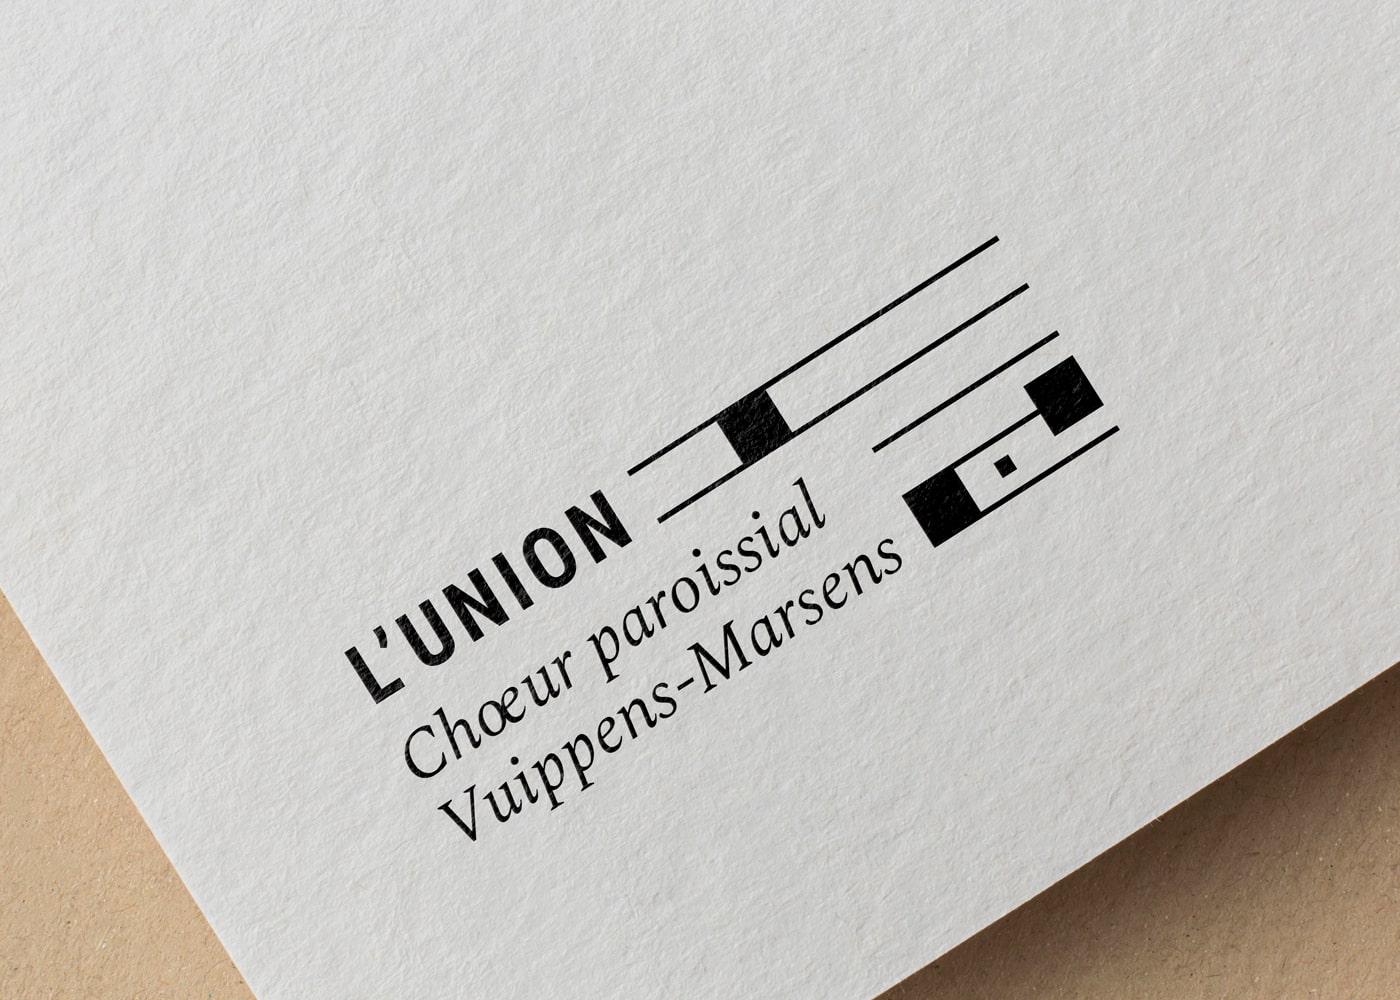 Choeur de l'Union Vuippens-Marsens, logo